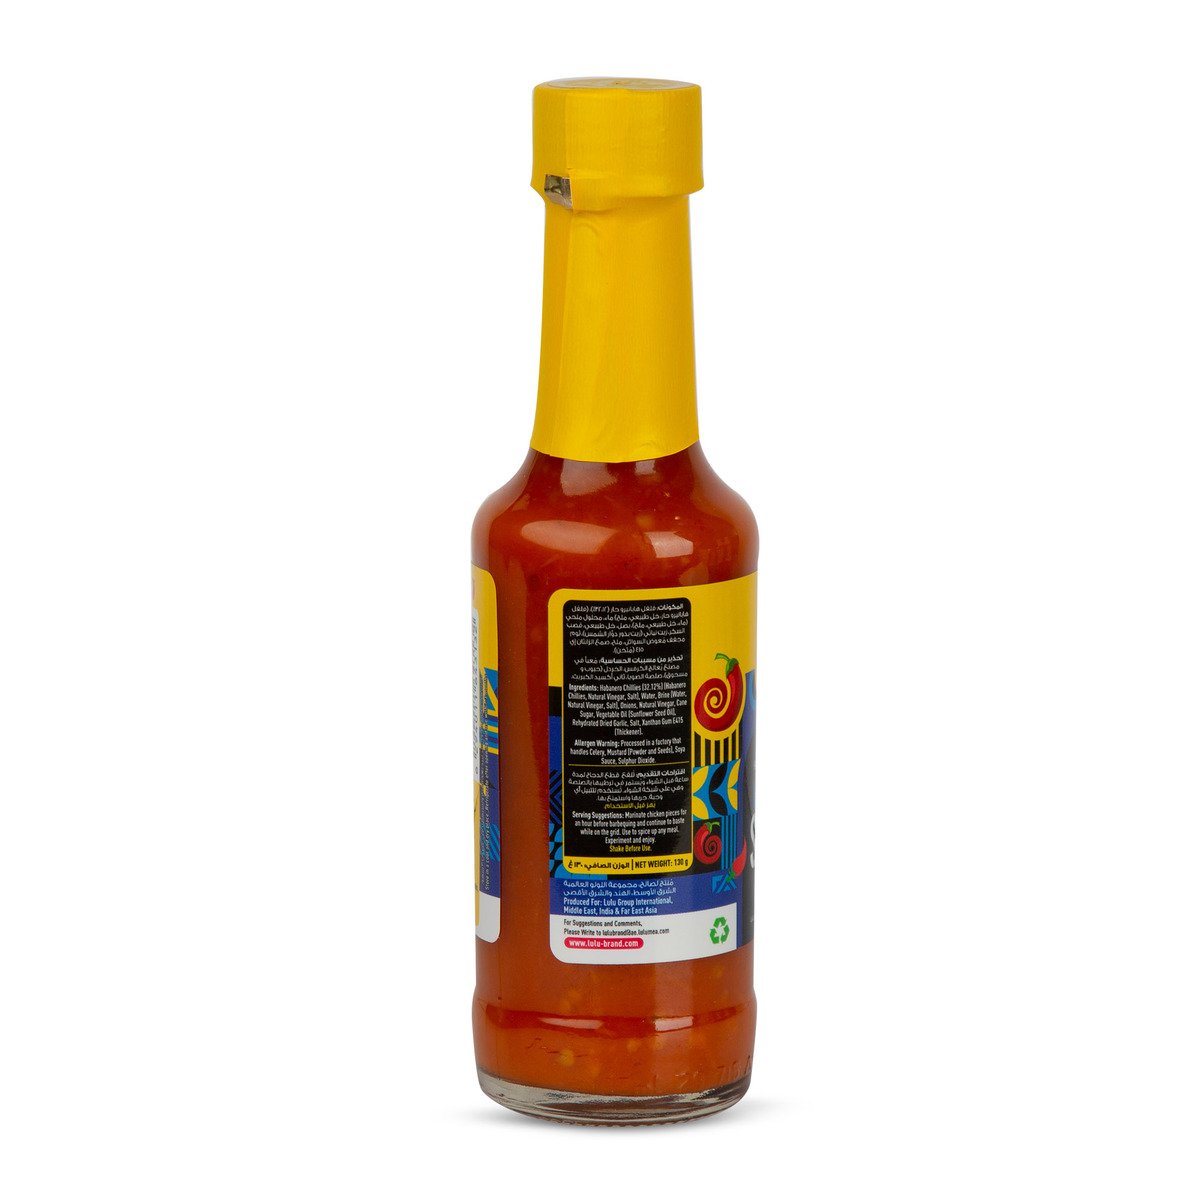 LuLu Habanero Sauce 130 g